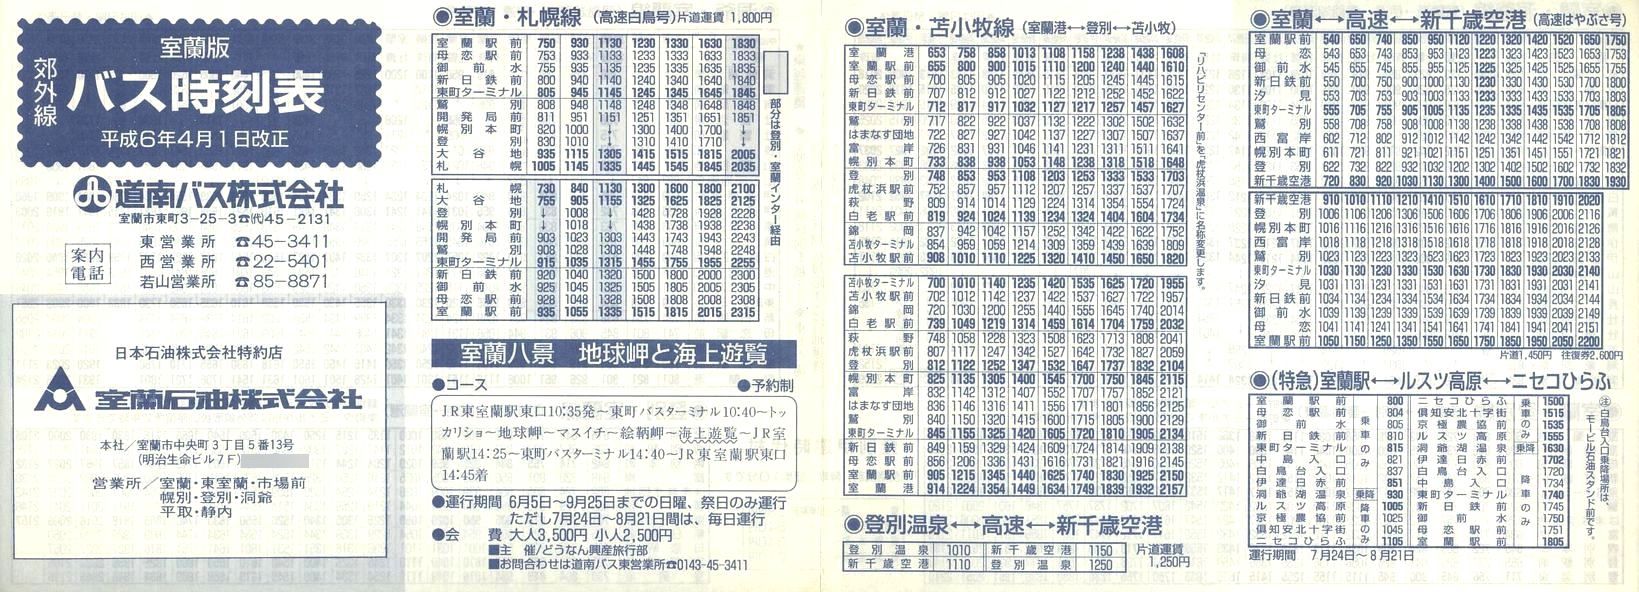 1994-04-01_oX_ōxO\\